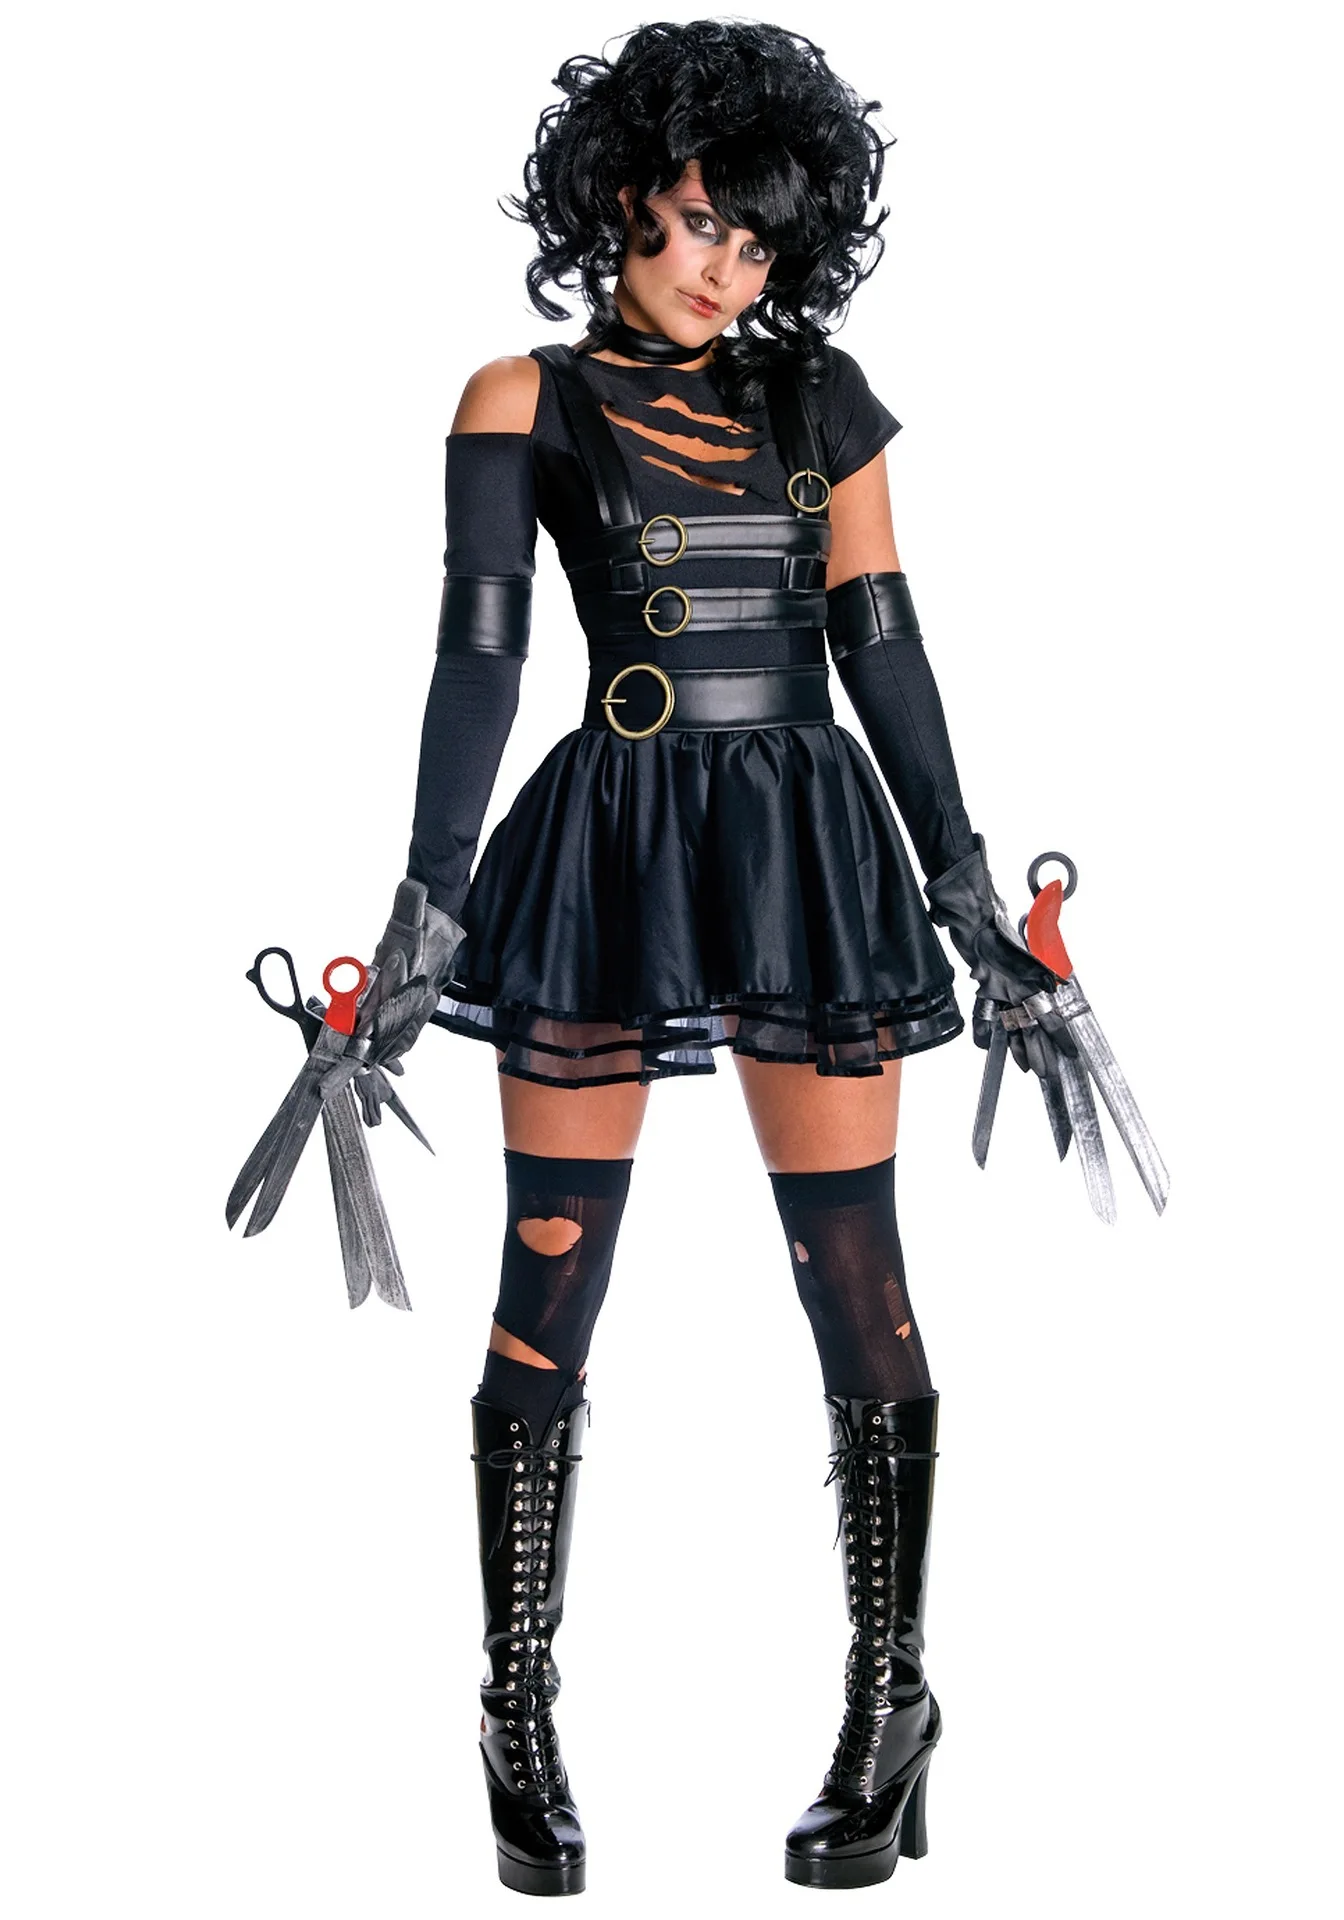 Взрослый Эдвард Руки-ножницы костюм костюмы на Хэллоуин для Для женщин»; ботинки в стиле «Эдвард Платье для косплея карнавальный вечерние костюмированного представления; маскарадный костюм; комплект